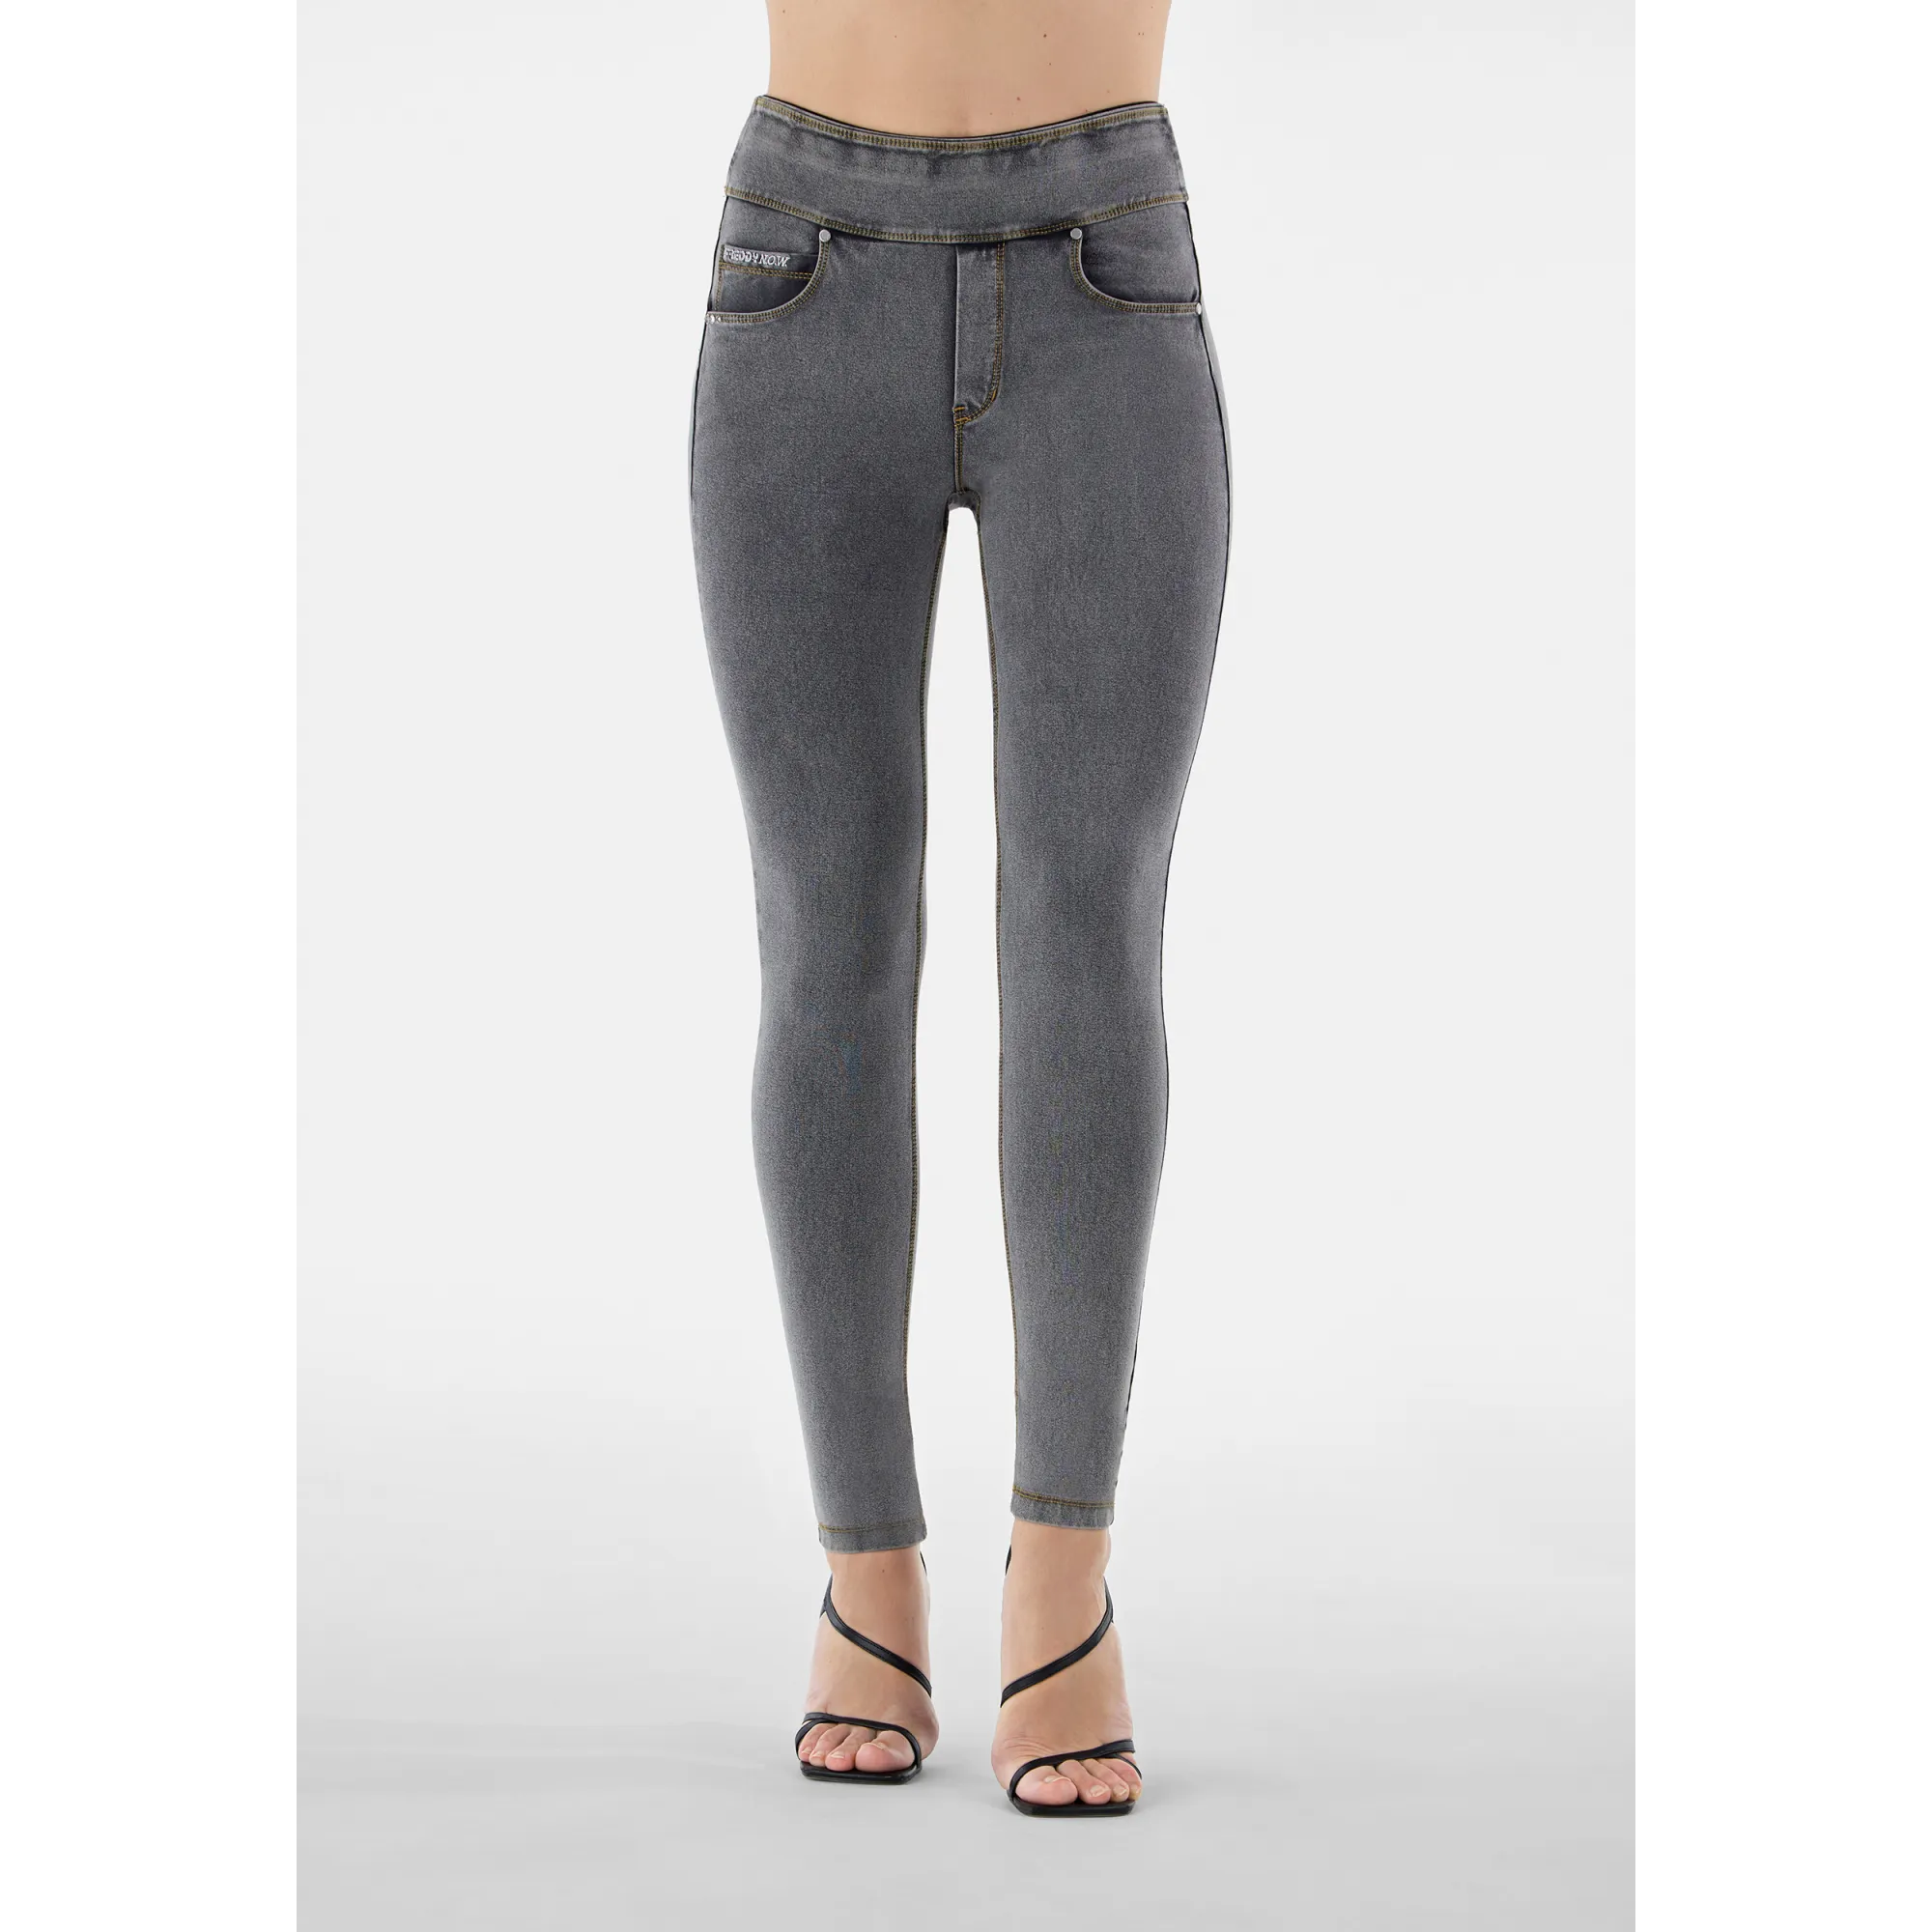 Freddy N.O.W.® Yoga Damen Comfort Jeans - Skinny - Grau - Gelbe Nähte